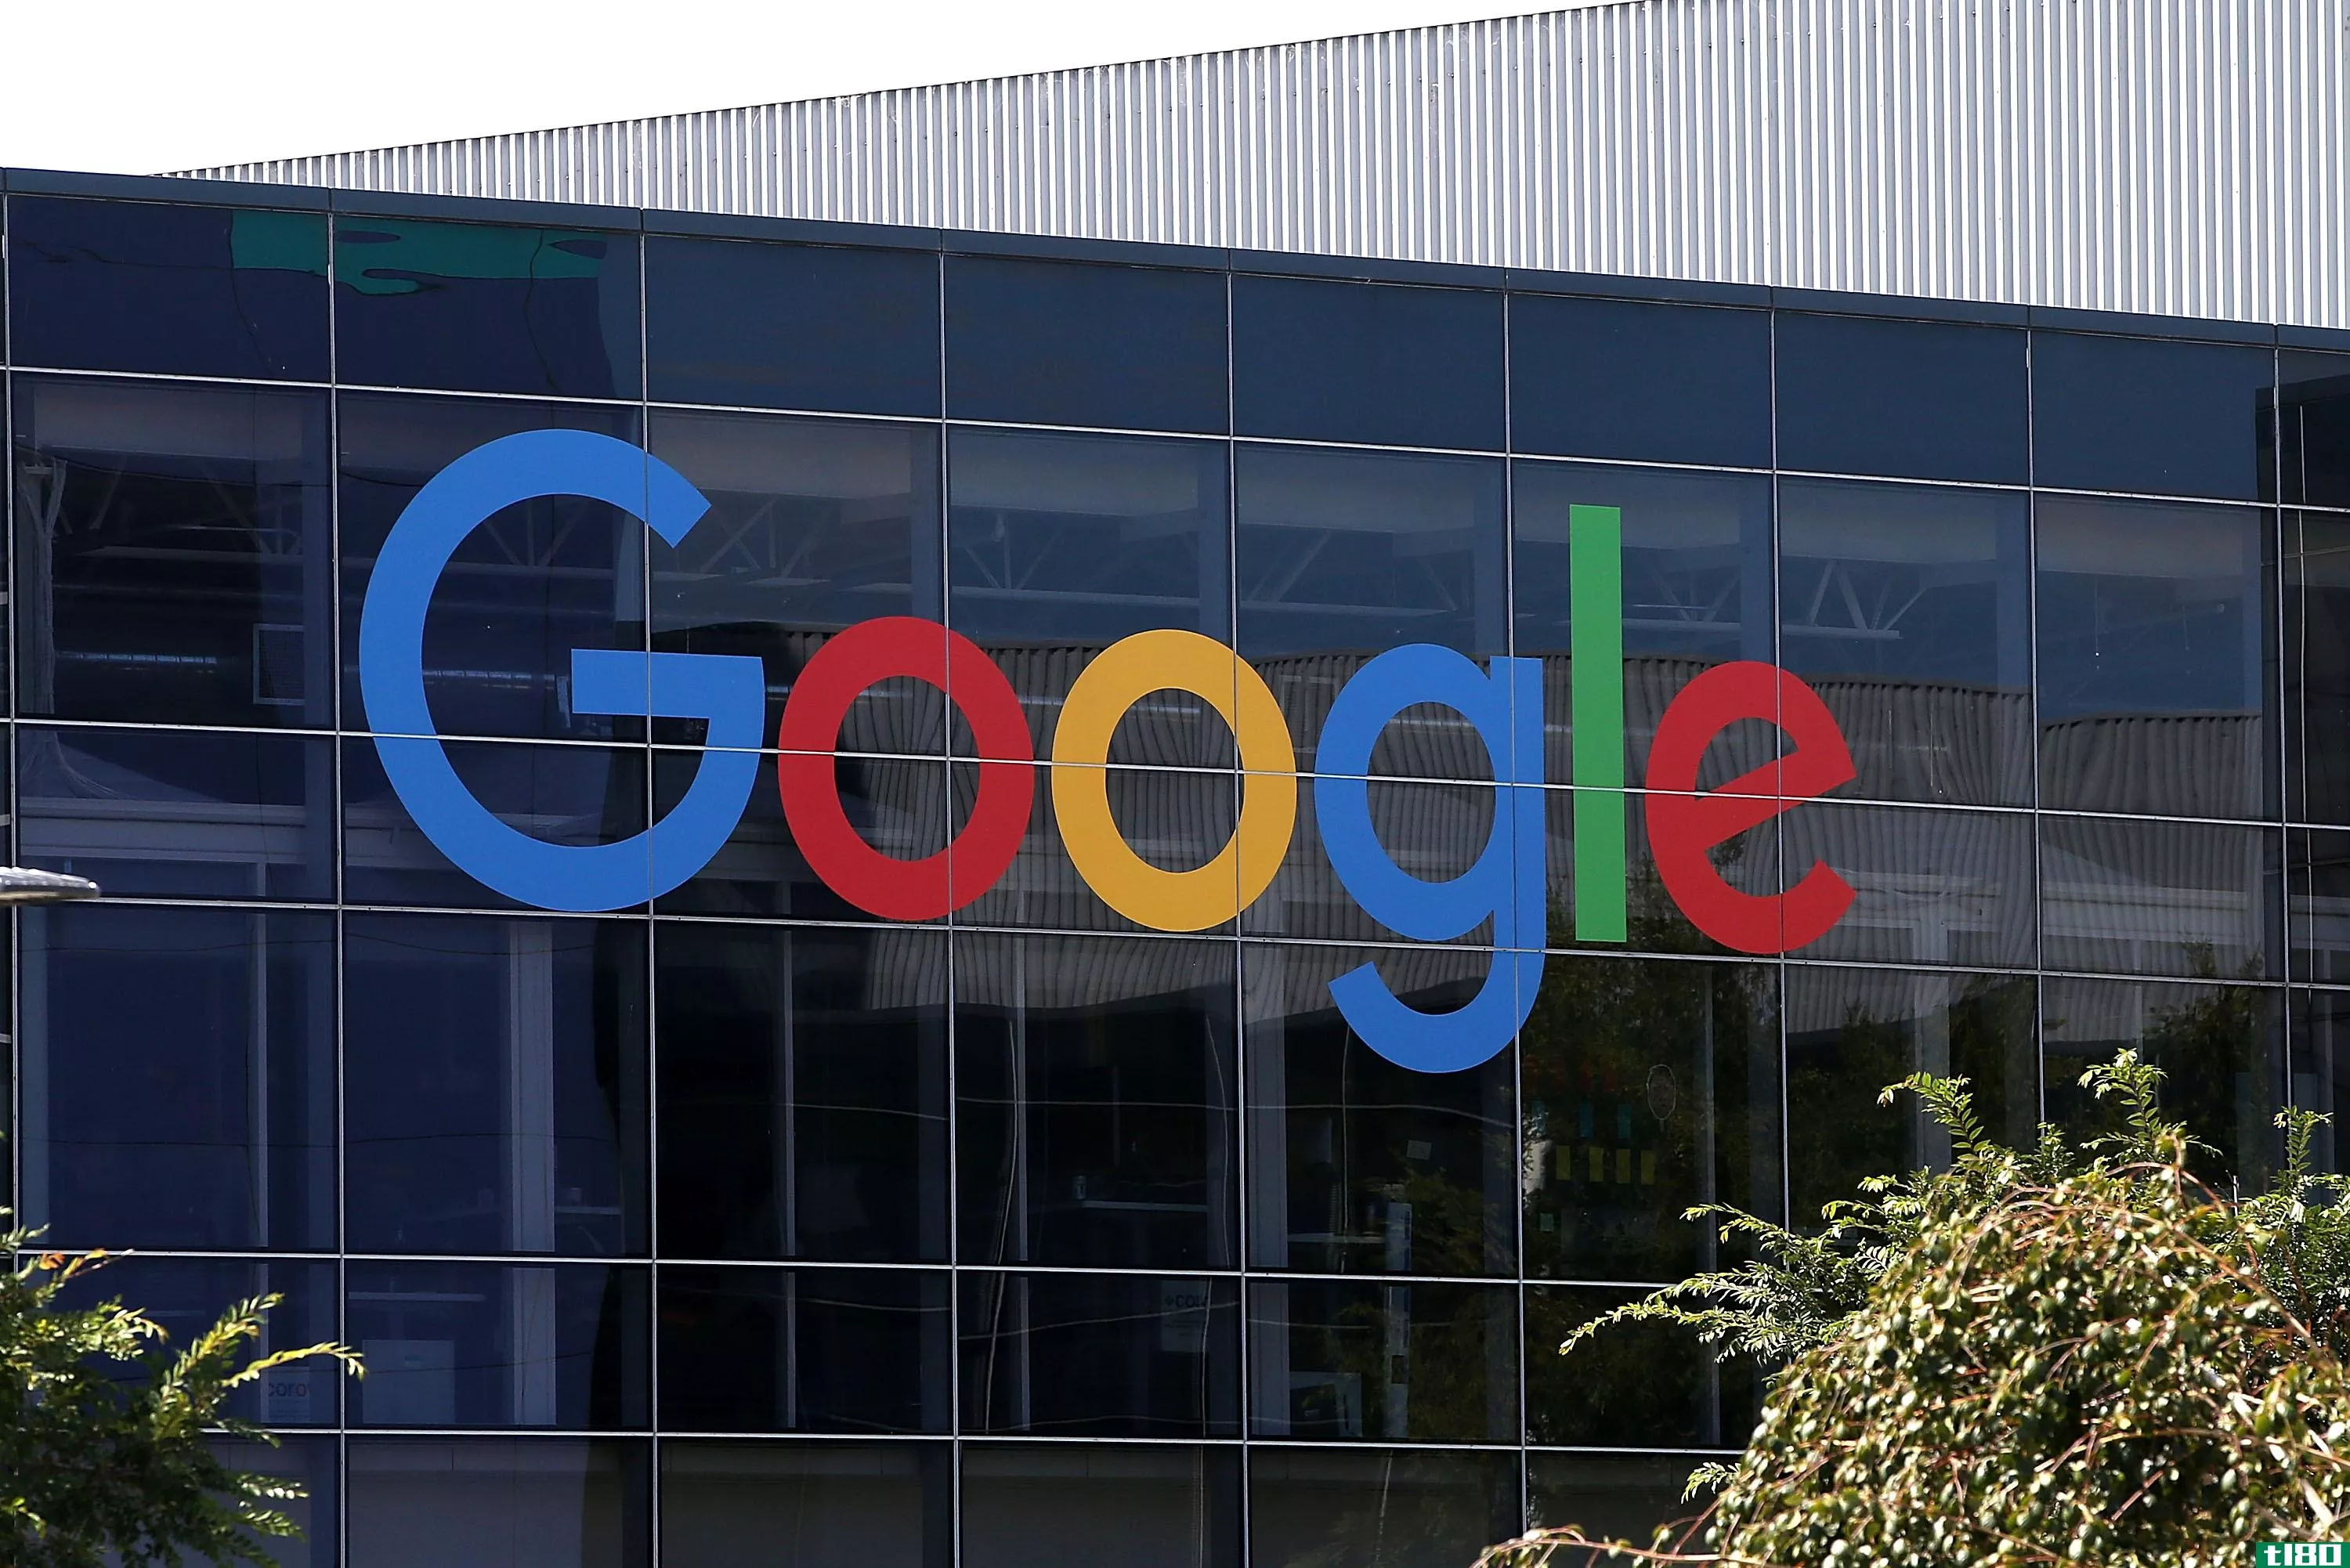 谷歌员工在头衔中增加了“女士”来反对性别歧视